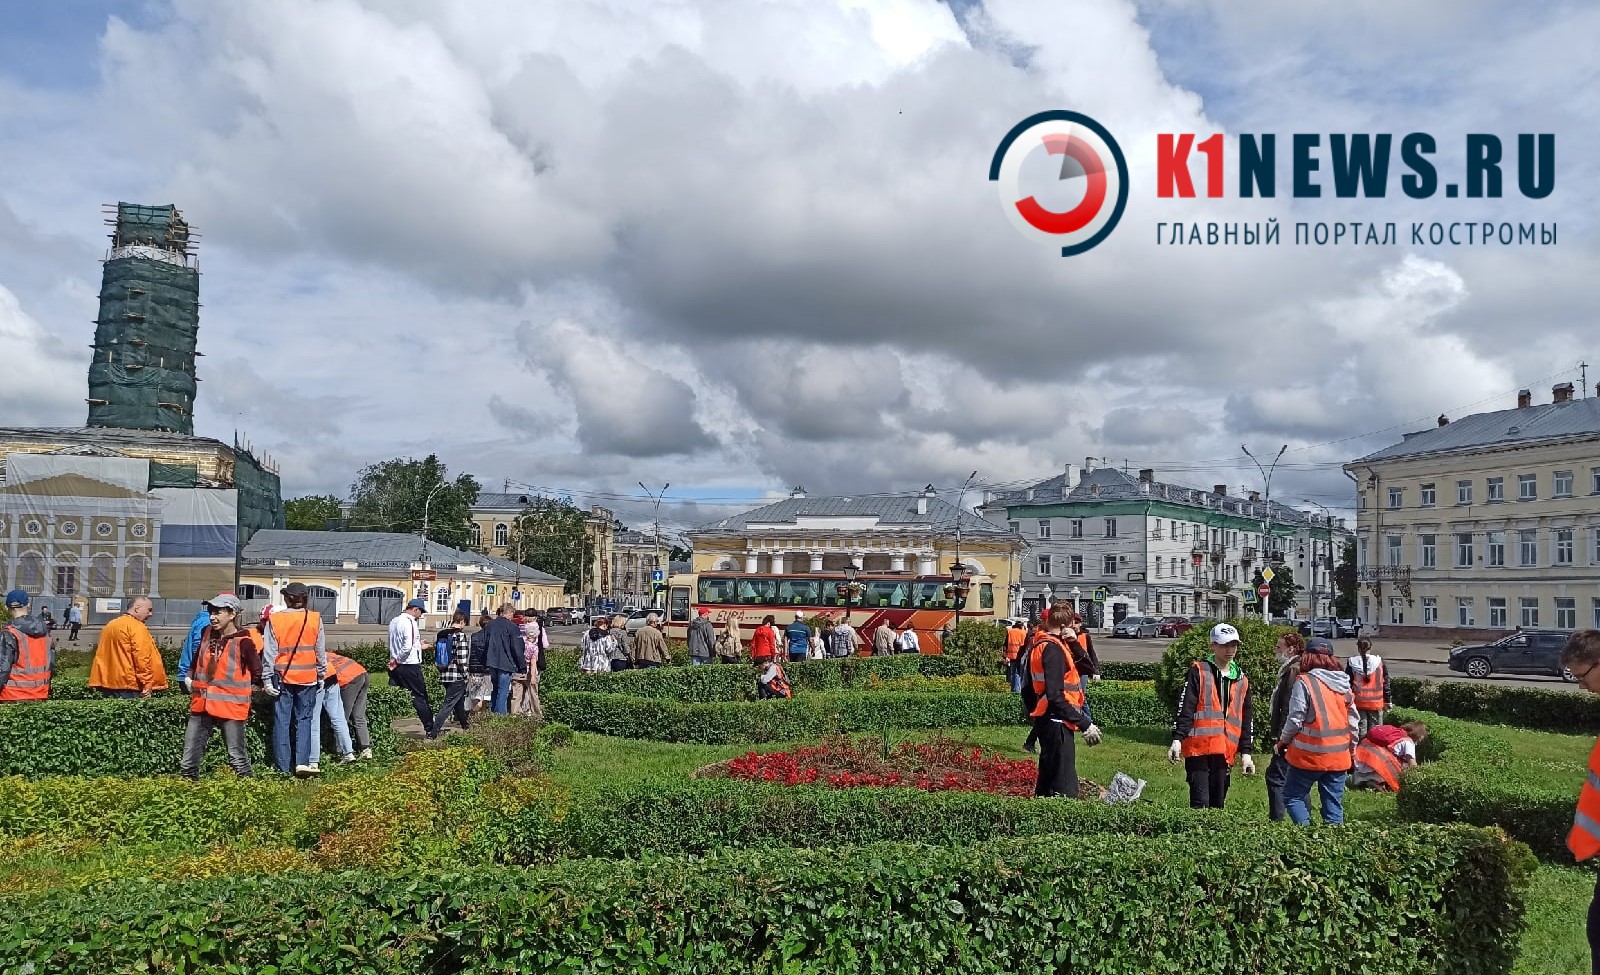 Сусанинскую площадь в Костроме ожидает масштабная реконструкция